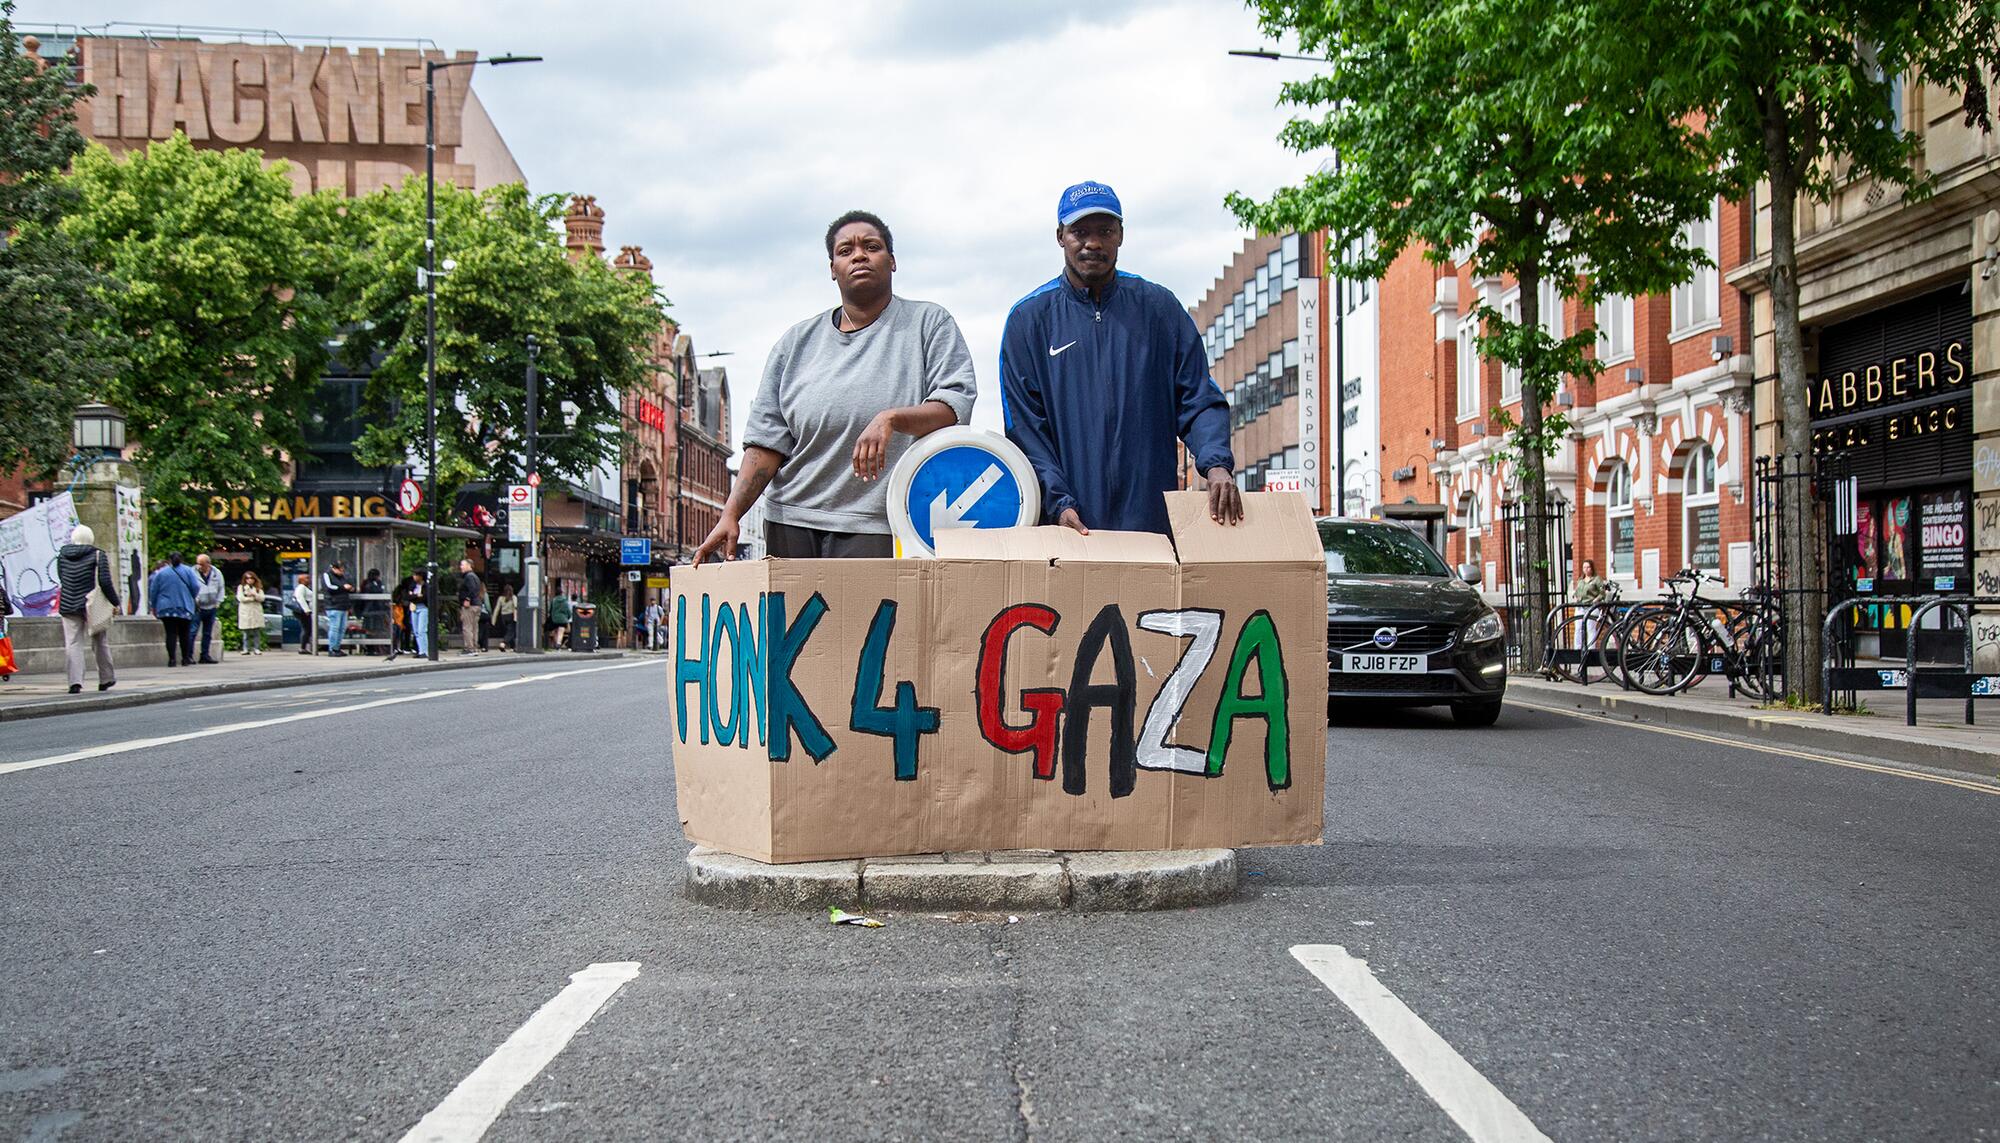 Acampada Palestina Hackney en Londres 18